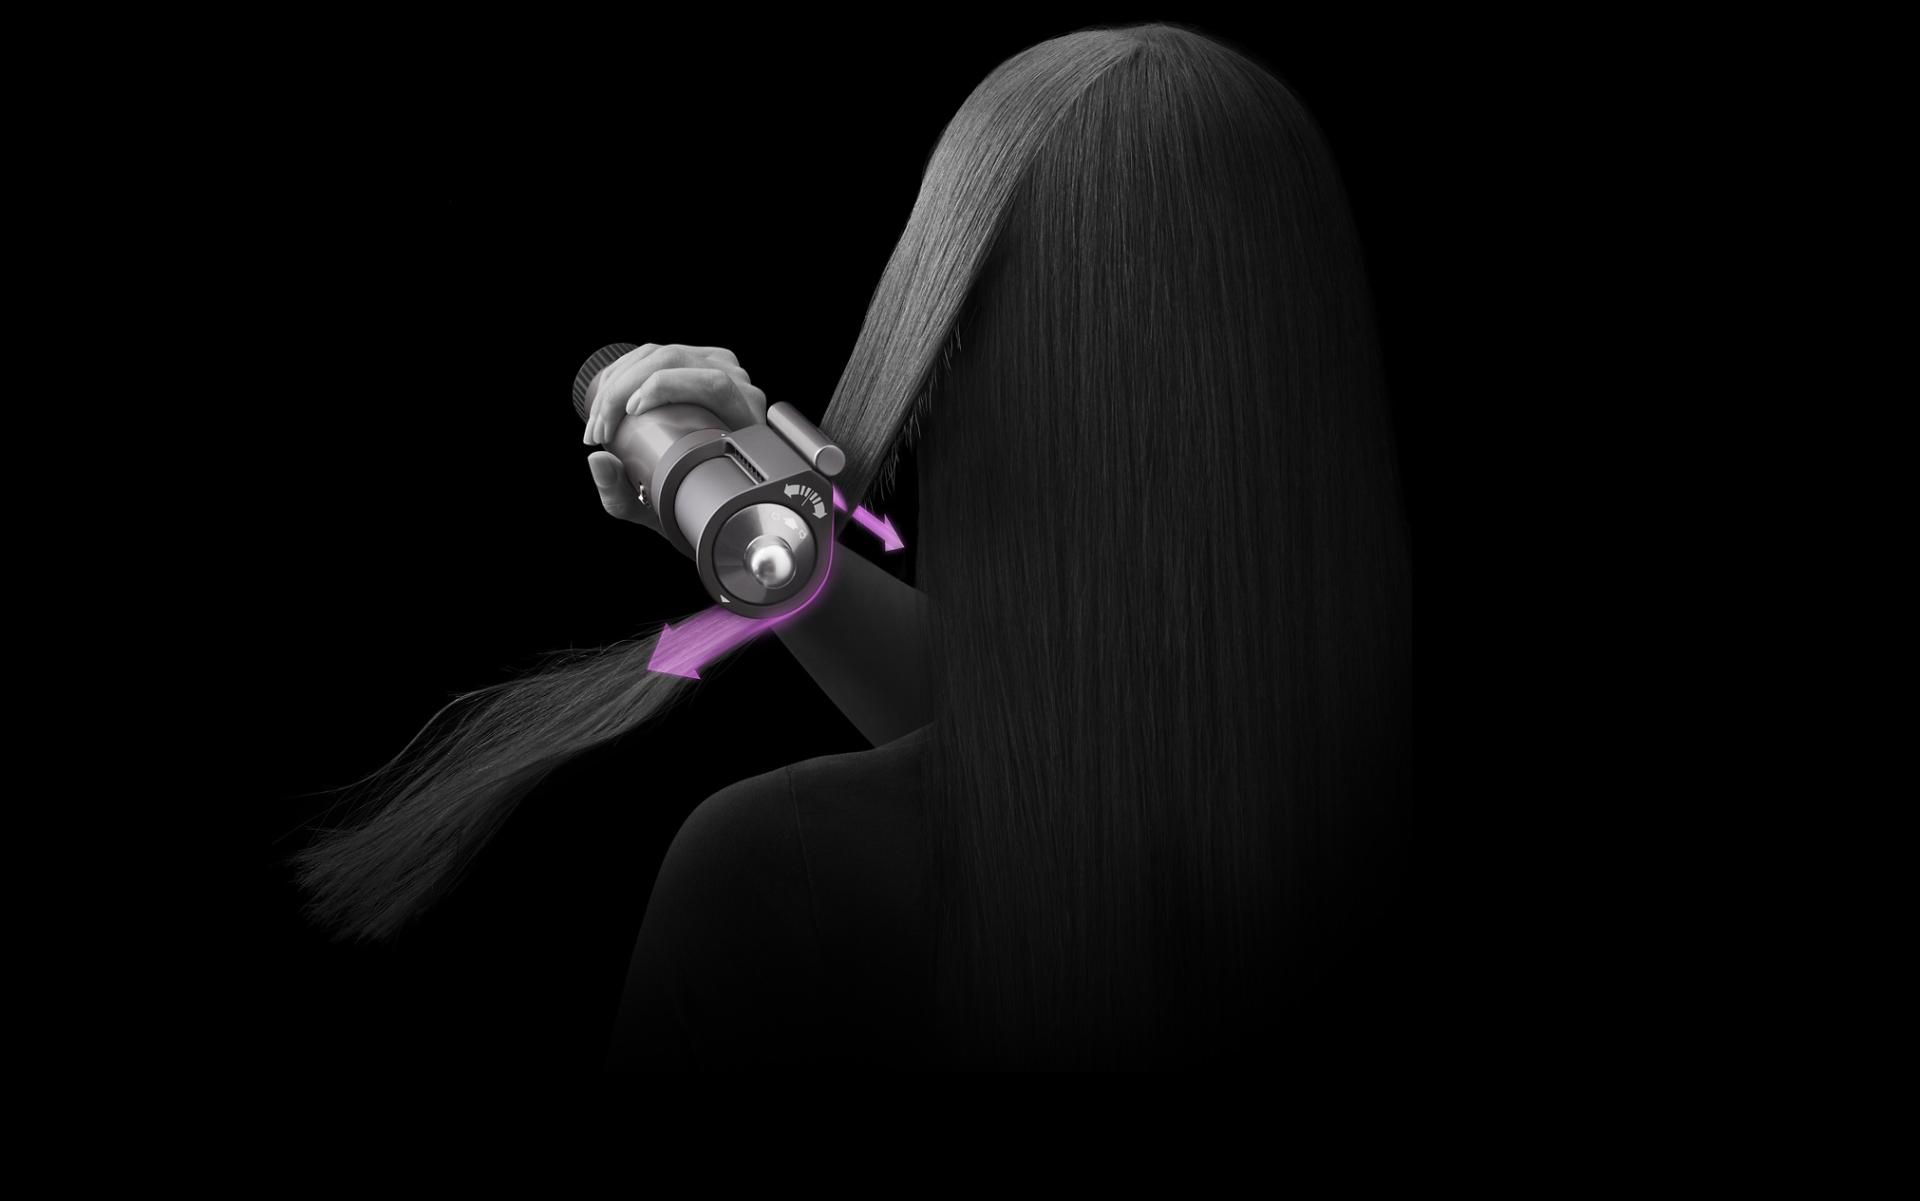 דוגמנית משתמשת באביזר ייבוש השיער קואנדה במצב החלקה